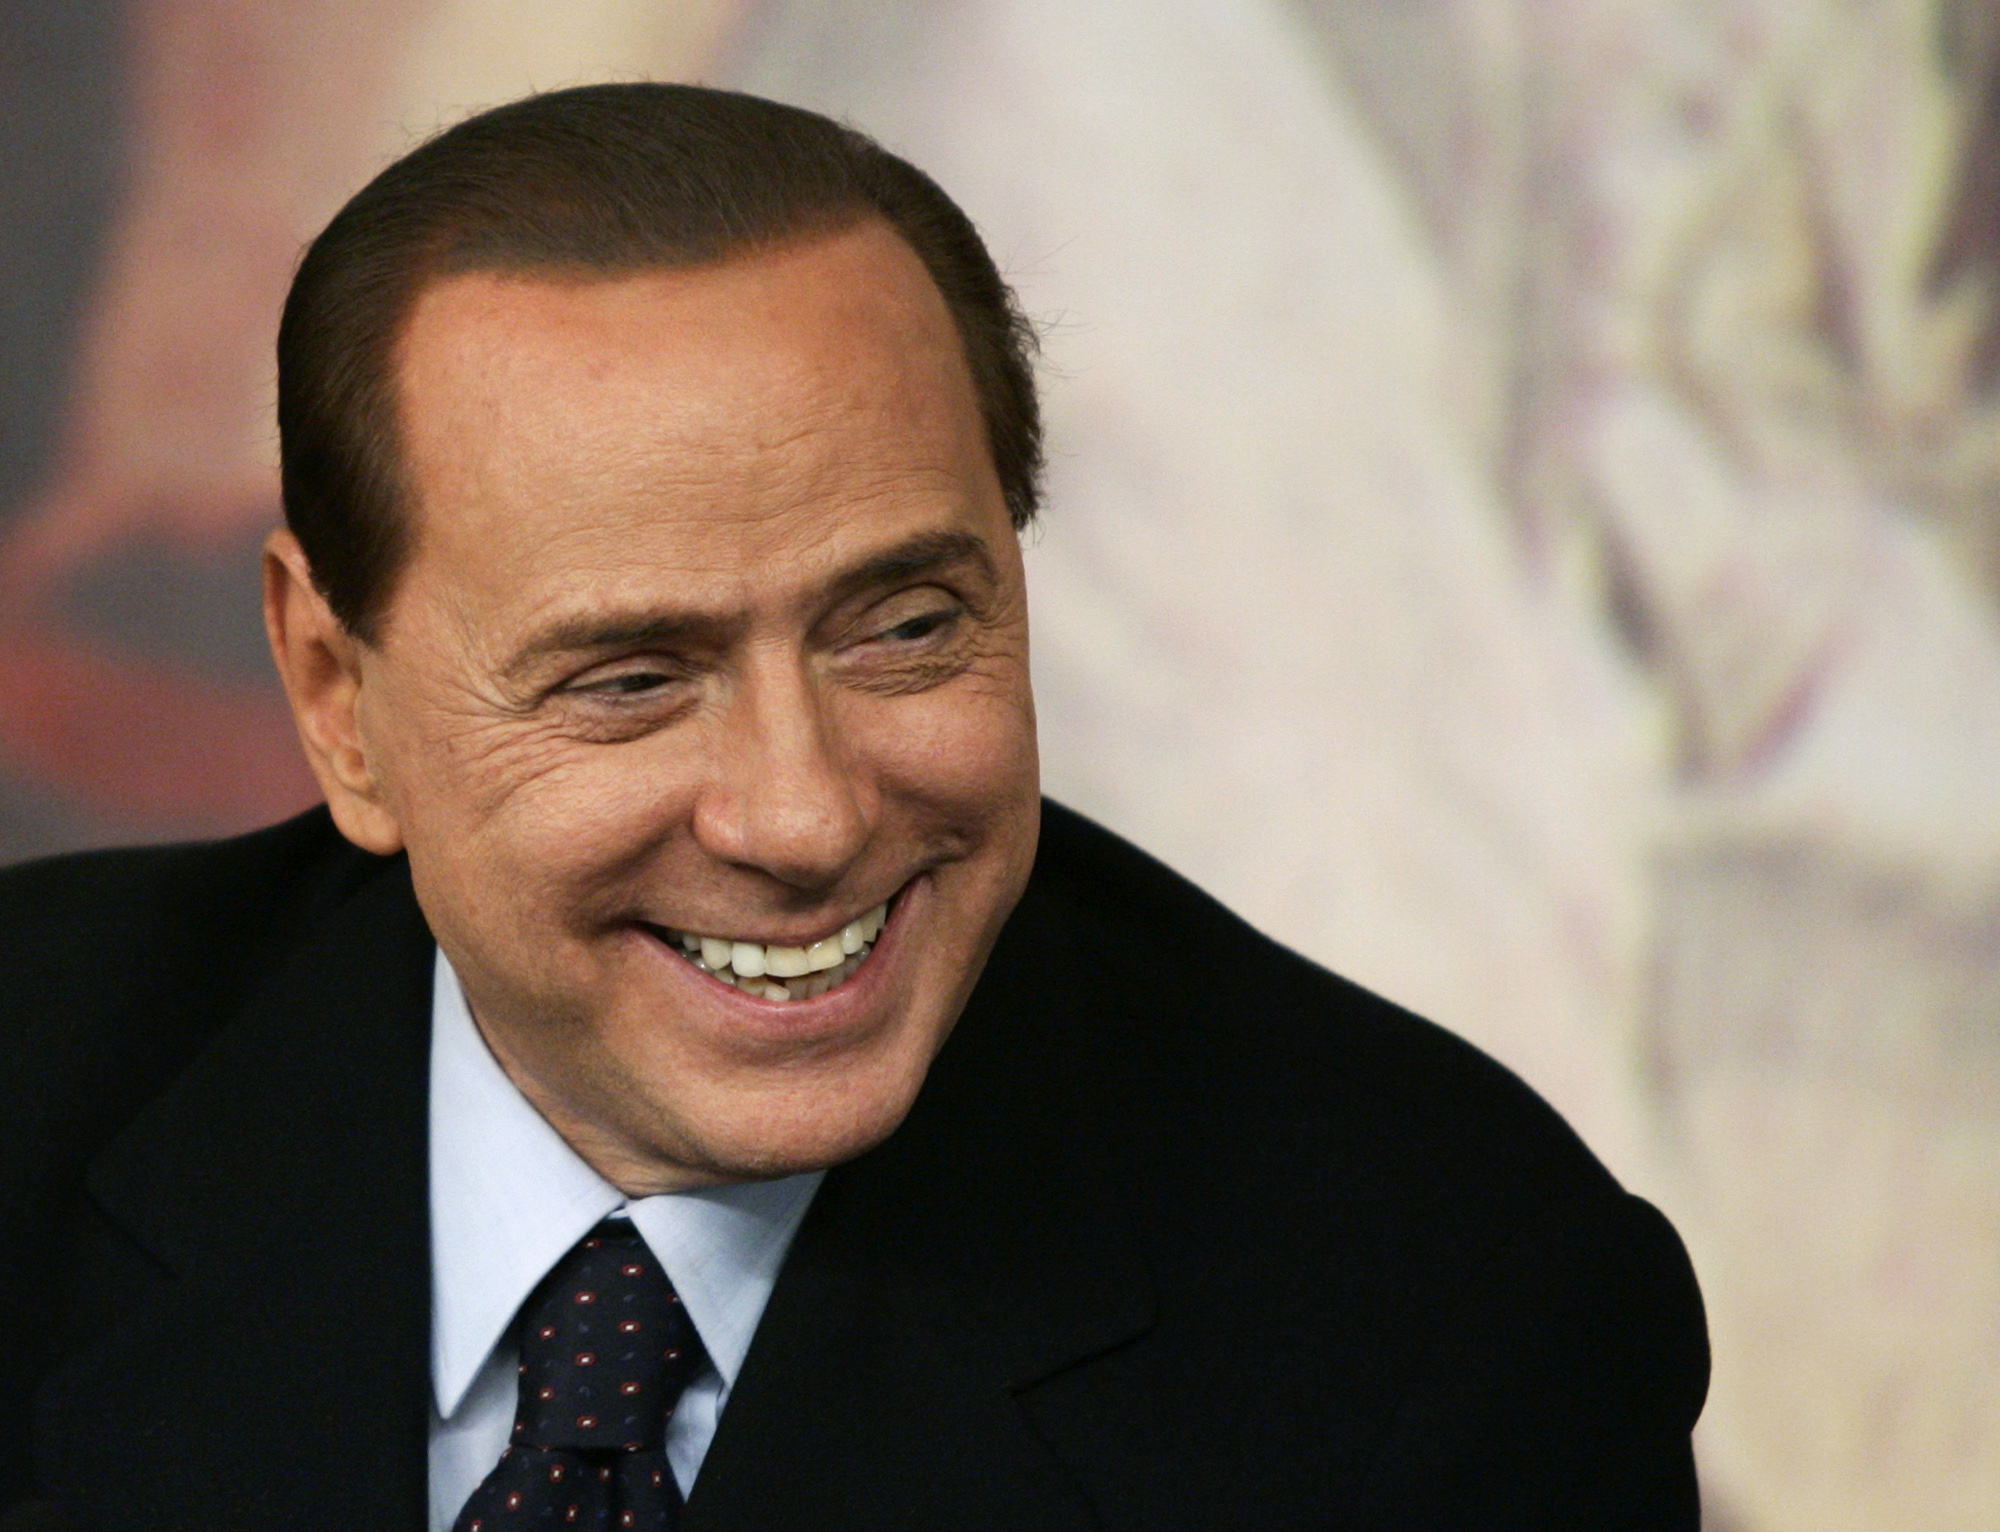 Berlusconi pártját megosztja a kormánybuktatás